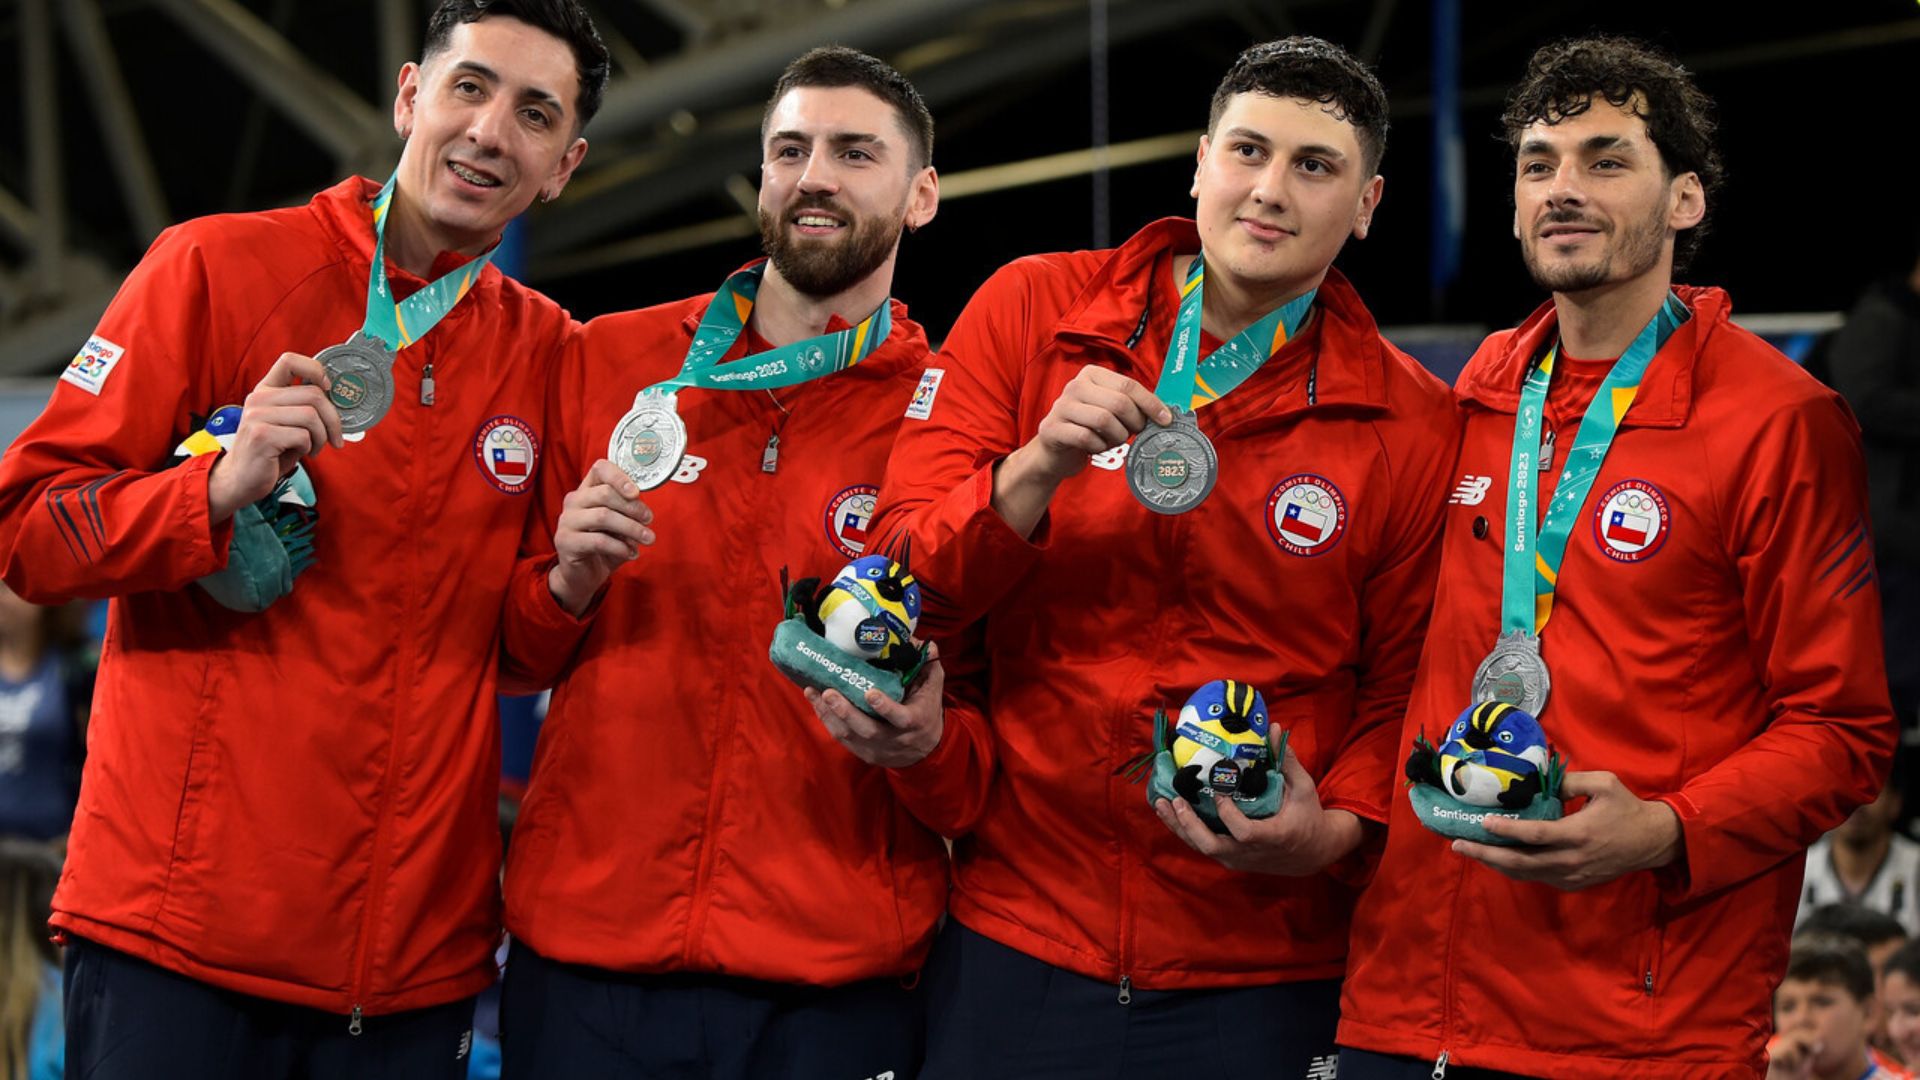 Resumen: Jornada productiva con nueve medallas para Chile